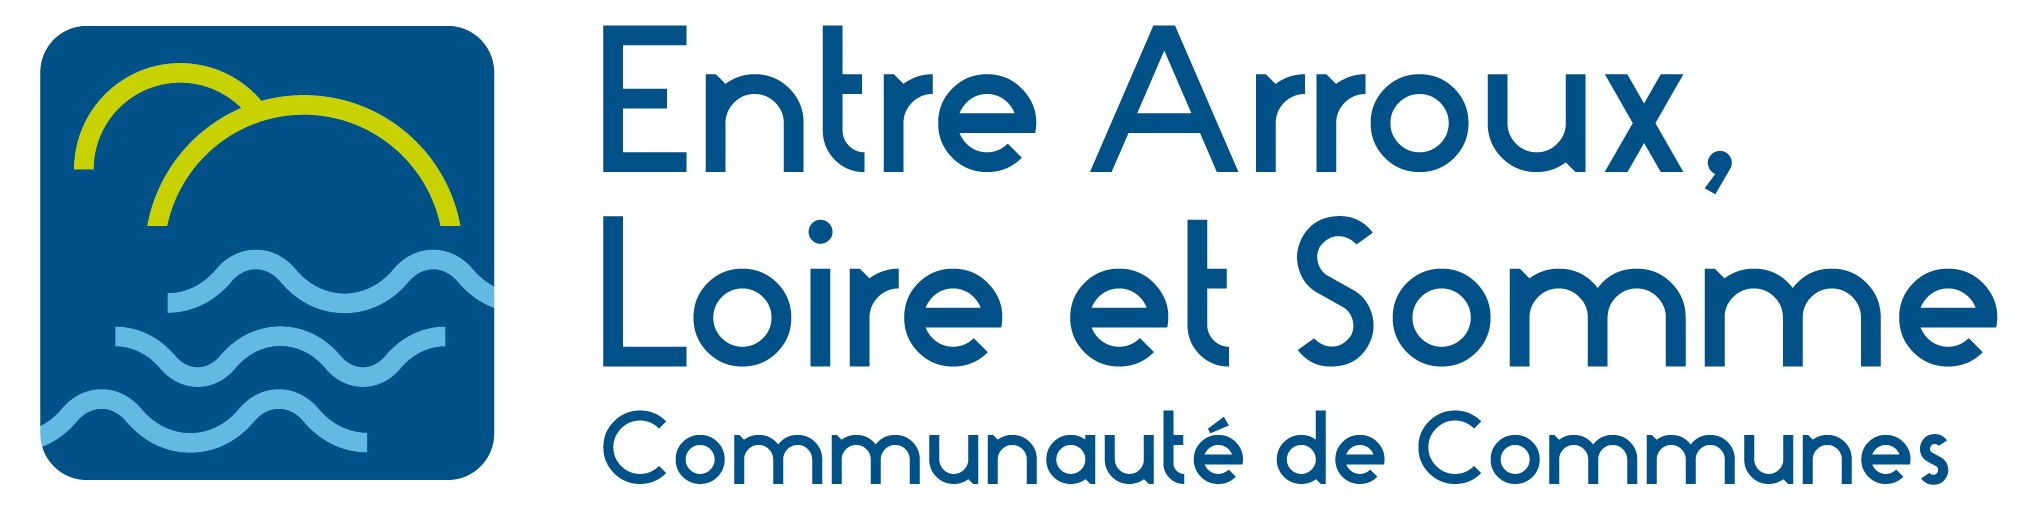 Logo Entre Arroux, Loire et Somme